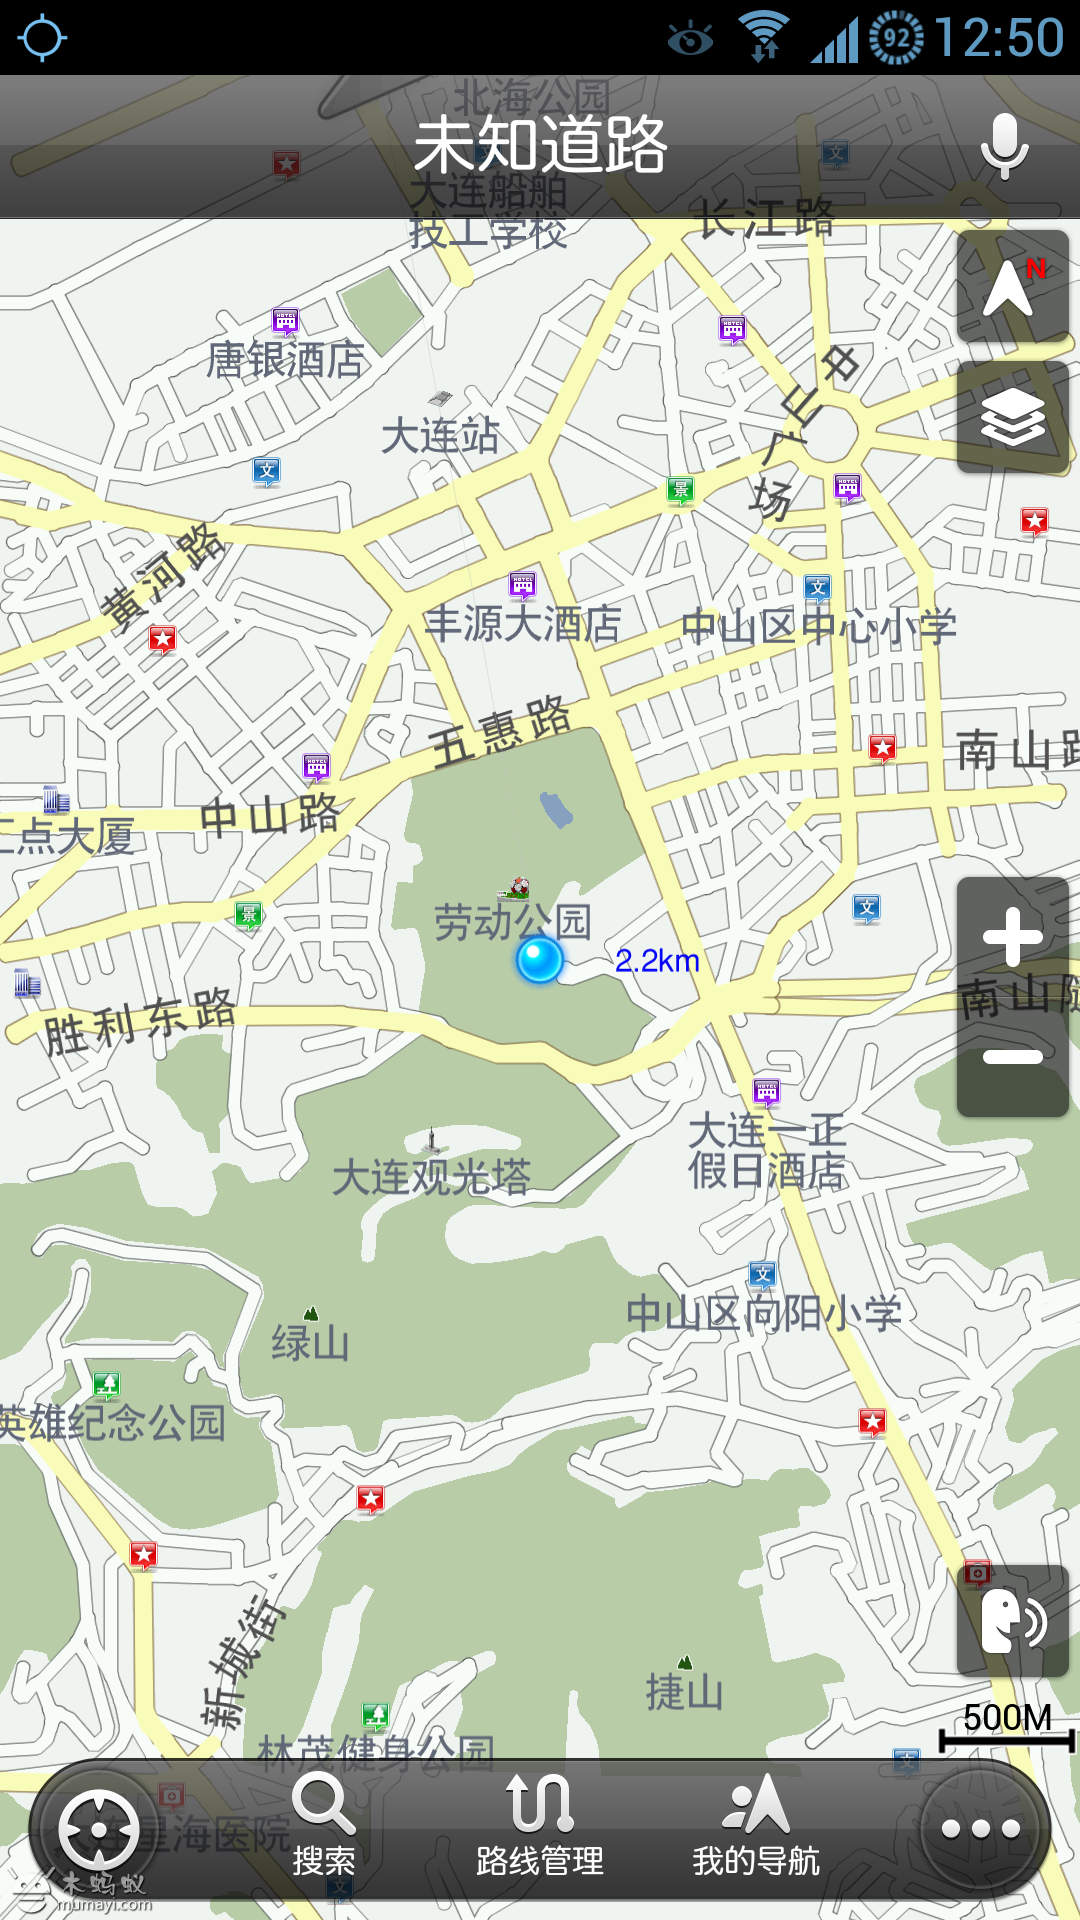 高德(纳斯达克:amap)是中国最大的 导航电子地图及应用服务供应商,为图片